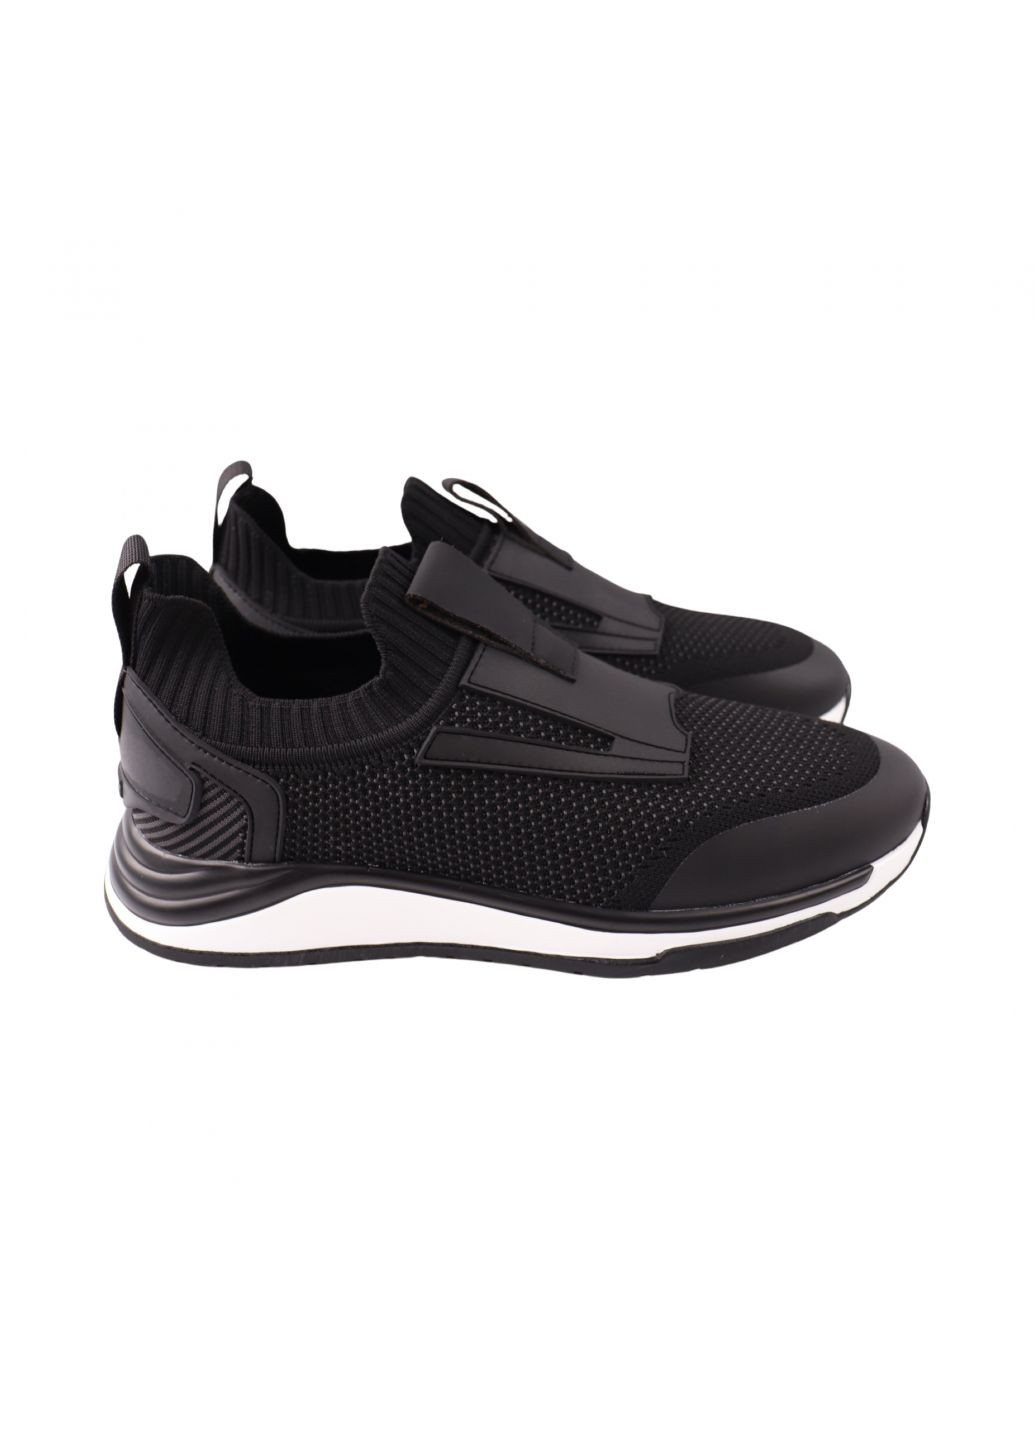 Черные кроссовки мужские черные текстиль Berisstini 249-24LK